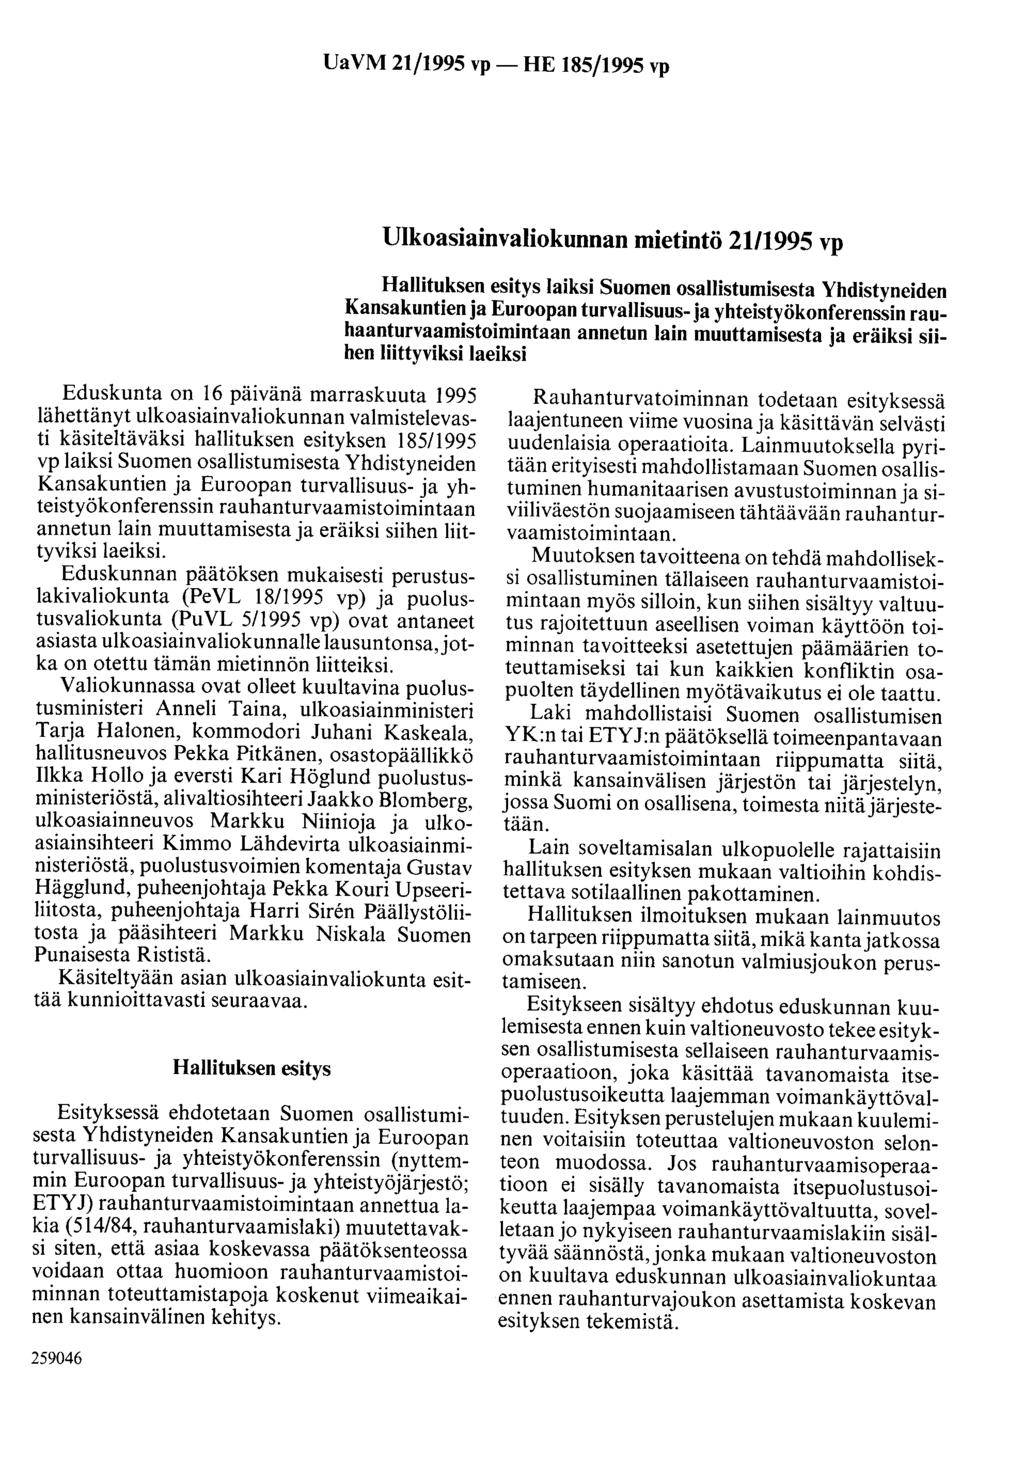 UaVM 21/1995 vp- HE 185/1995 vp Ulkoasiainvaliokunnan mietintö 21/1995 vp Hallituksen esitys laiksi Suomen osallistumisesta Yhdistyneiden Kansakuntien ja Euroopan turvallisuus- ja